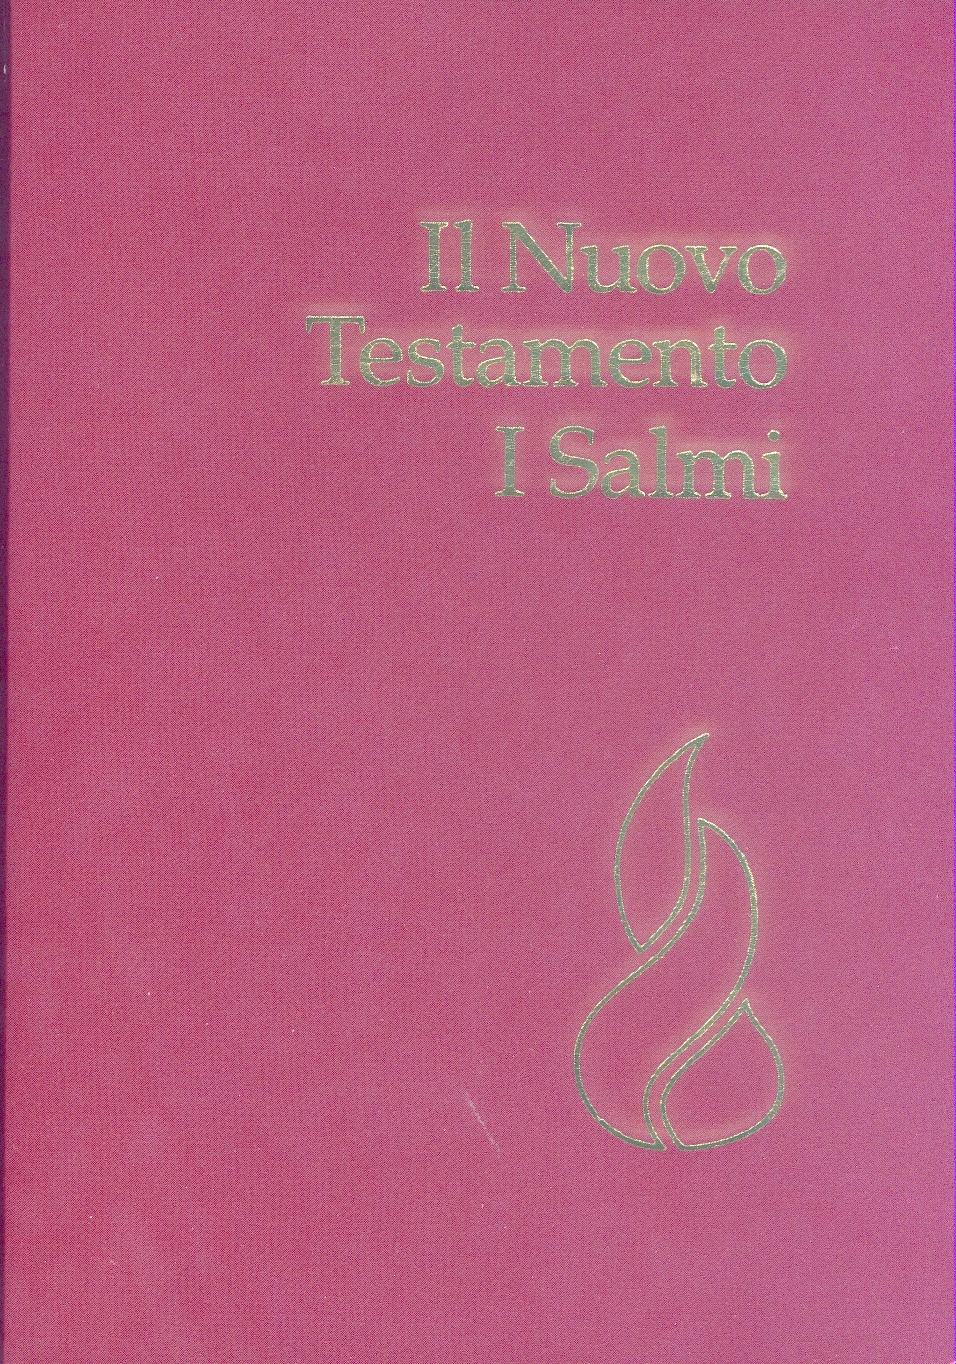 ITALIENISCH, NT & PSALMEN, NOUVA RIVEDUTA, MINI, BROSCHIERT, ROT